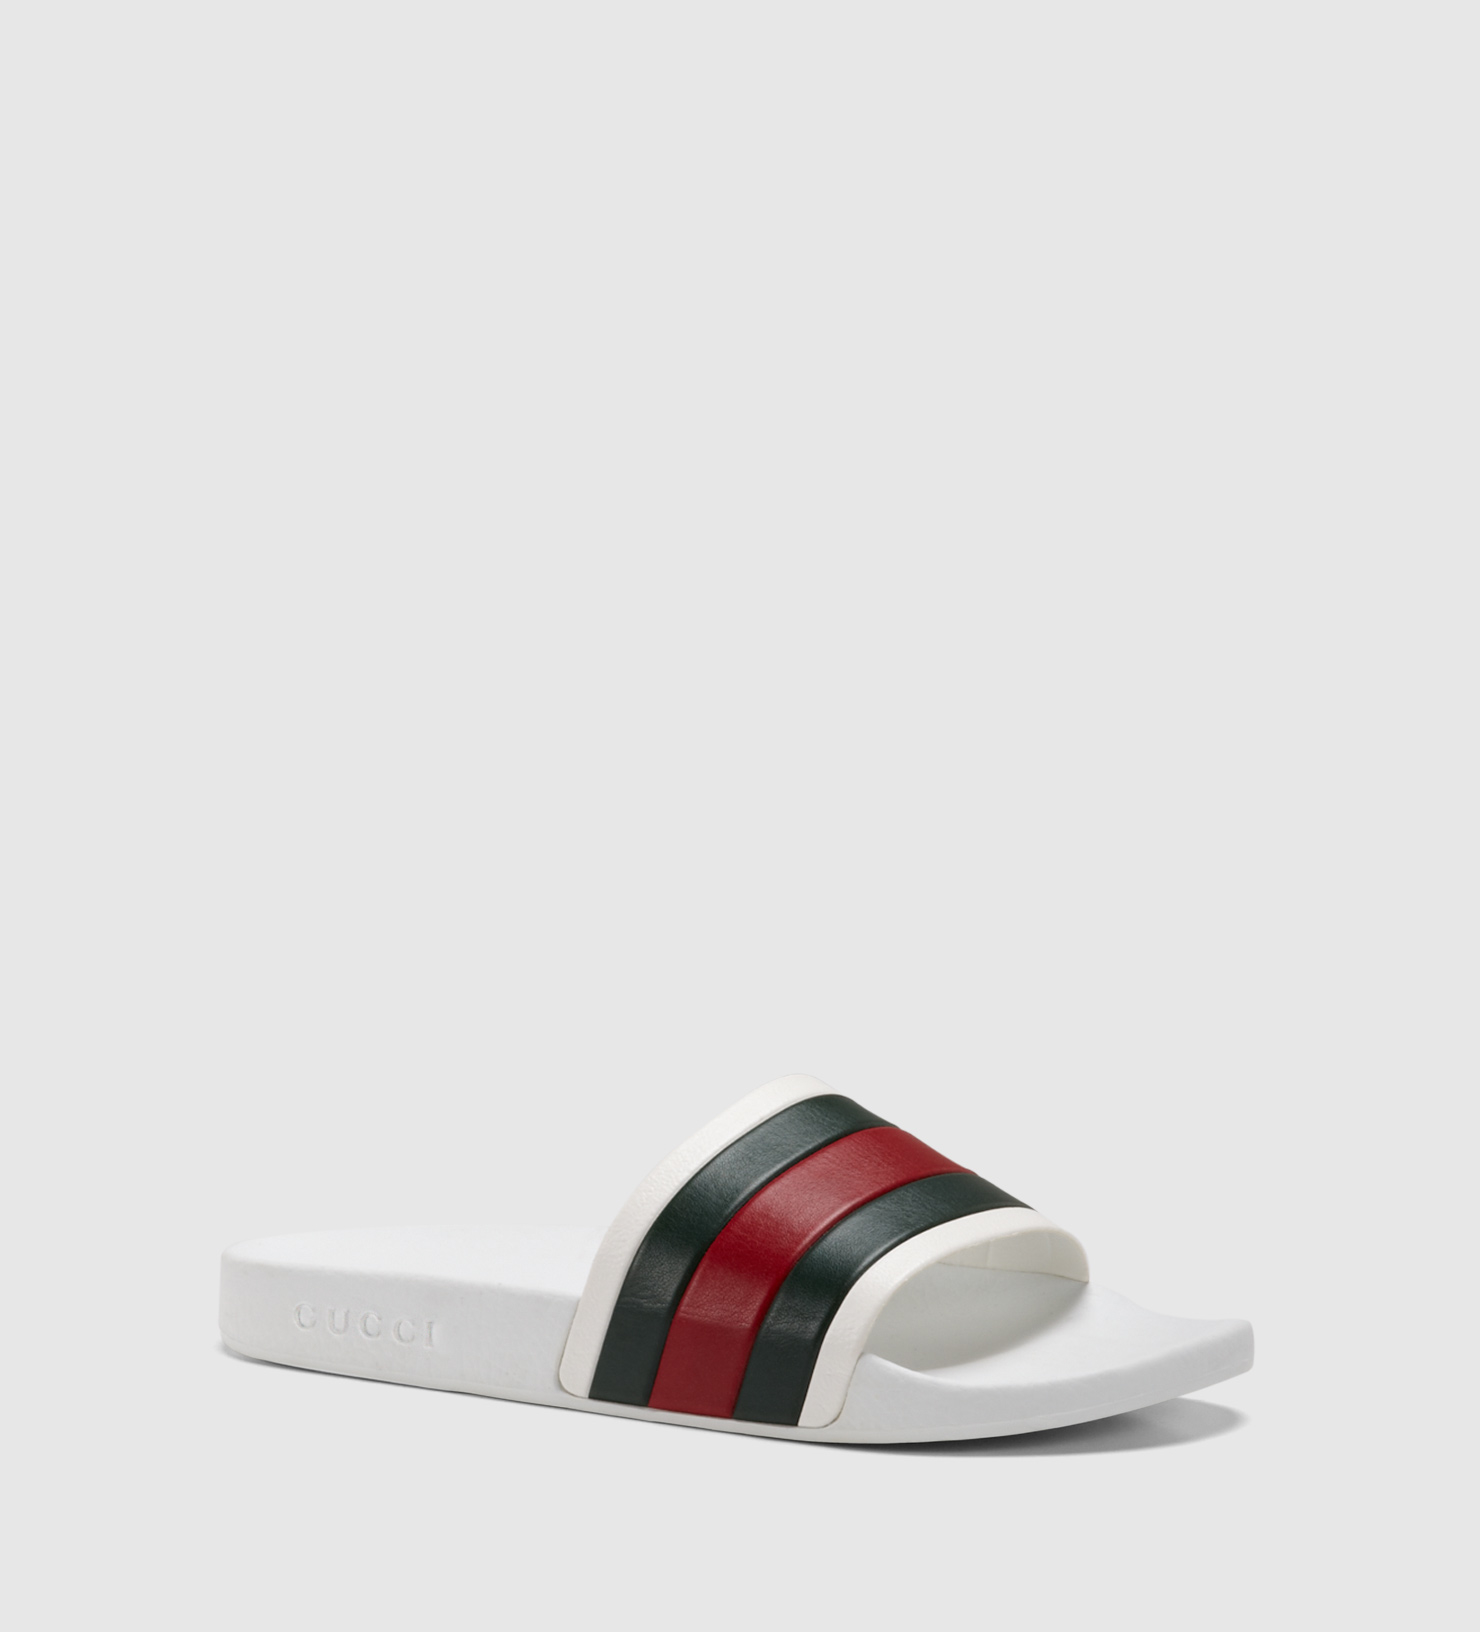 Fordøjelsesorgan Email sol Gucci White Rubber Slide Sandal for Men - Lyst